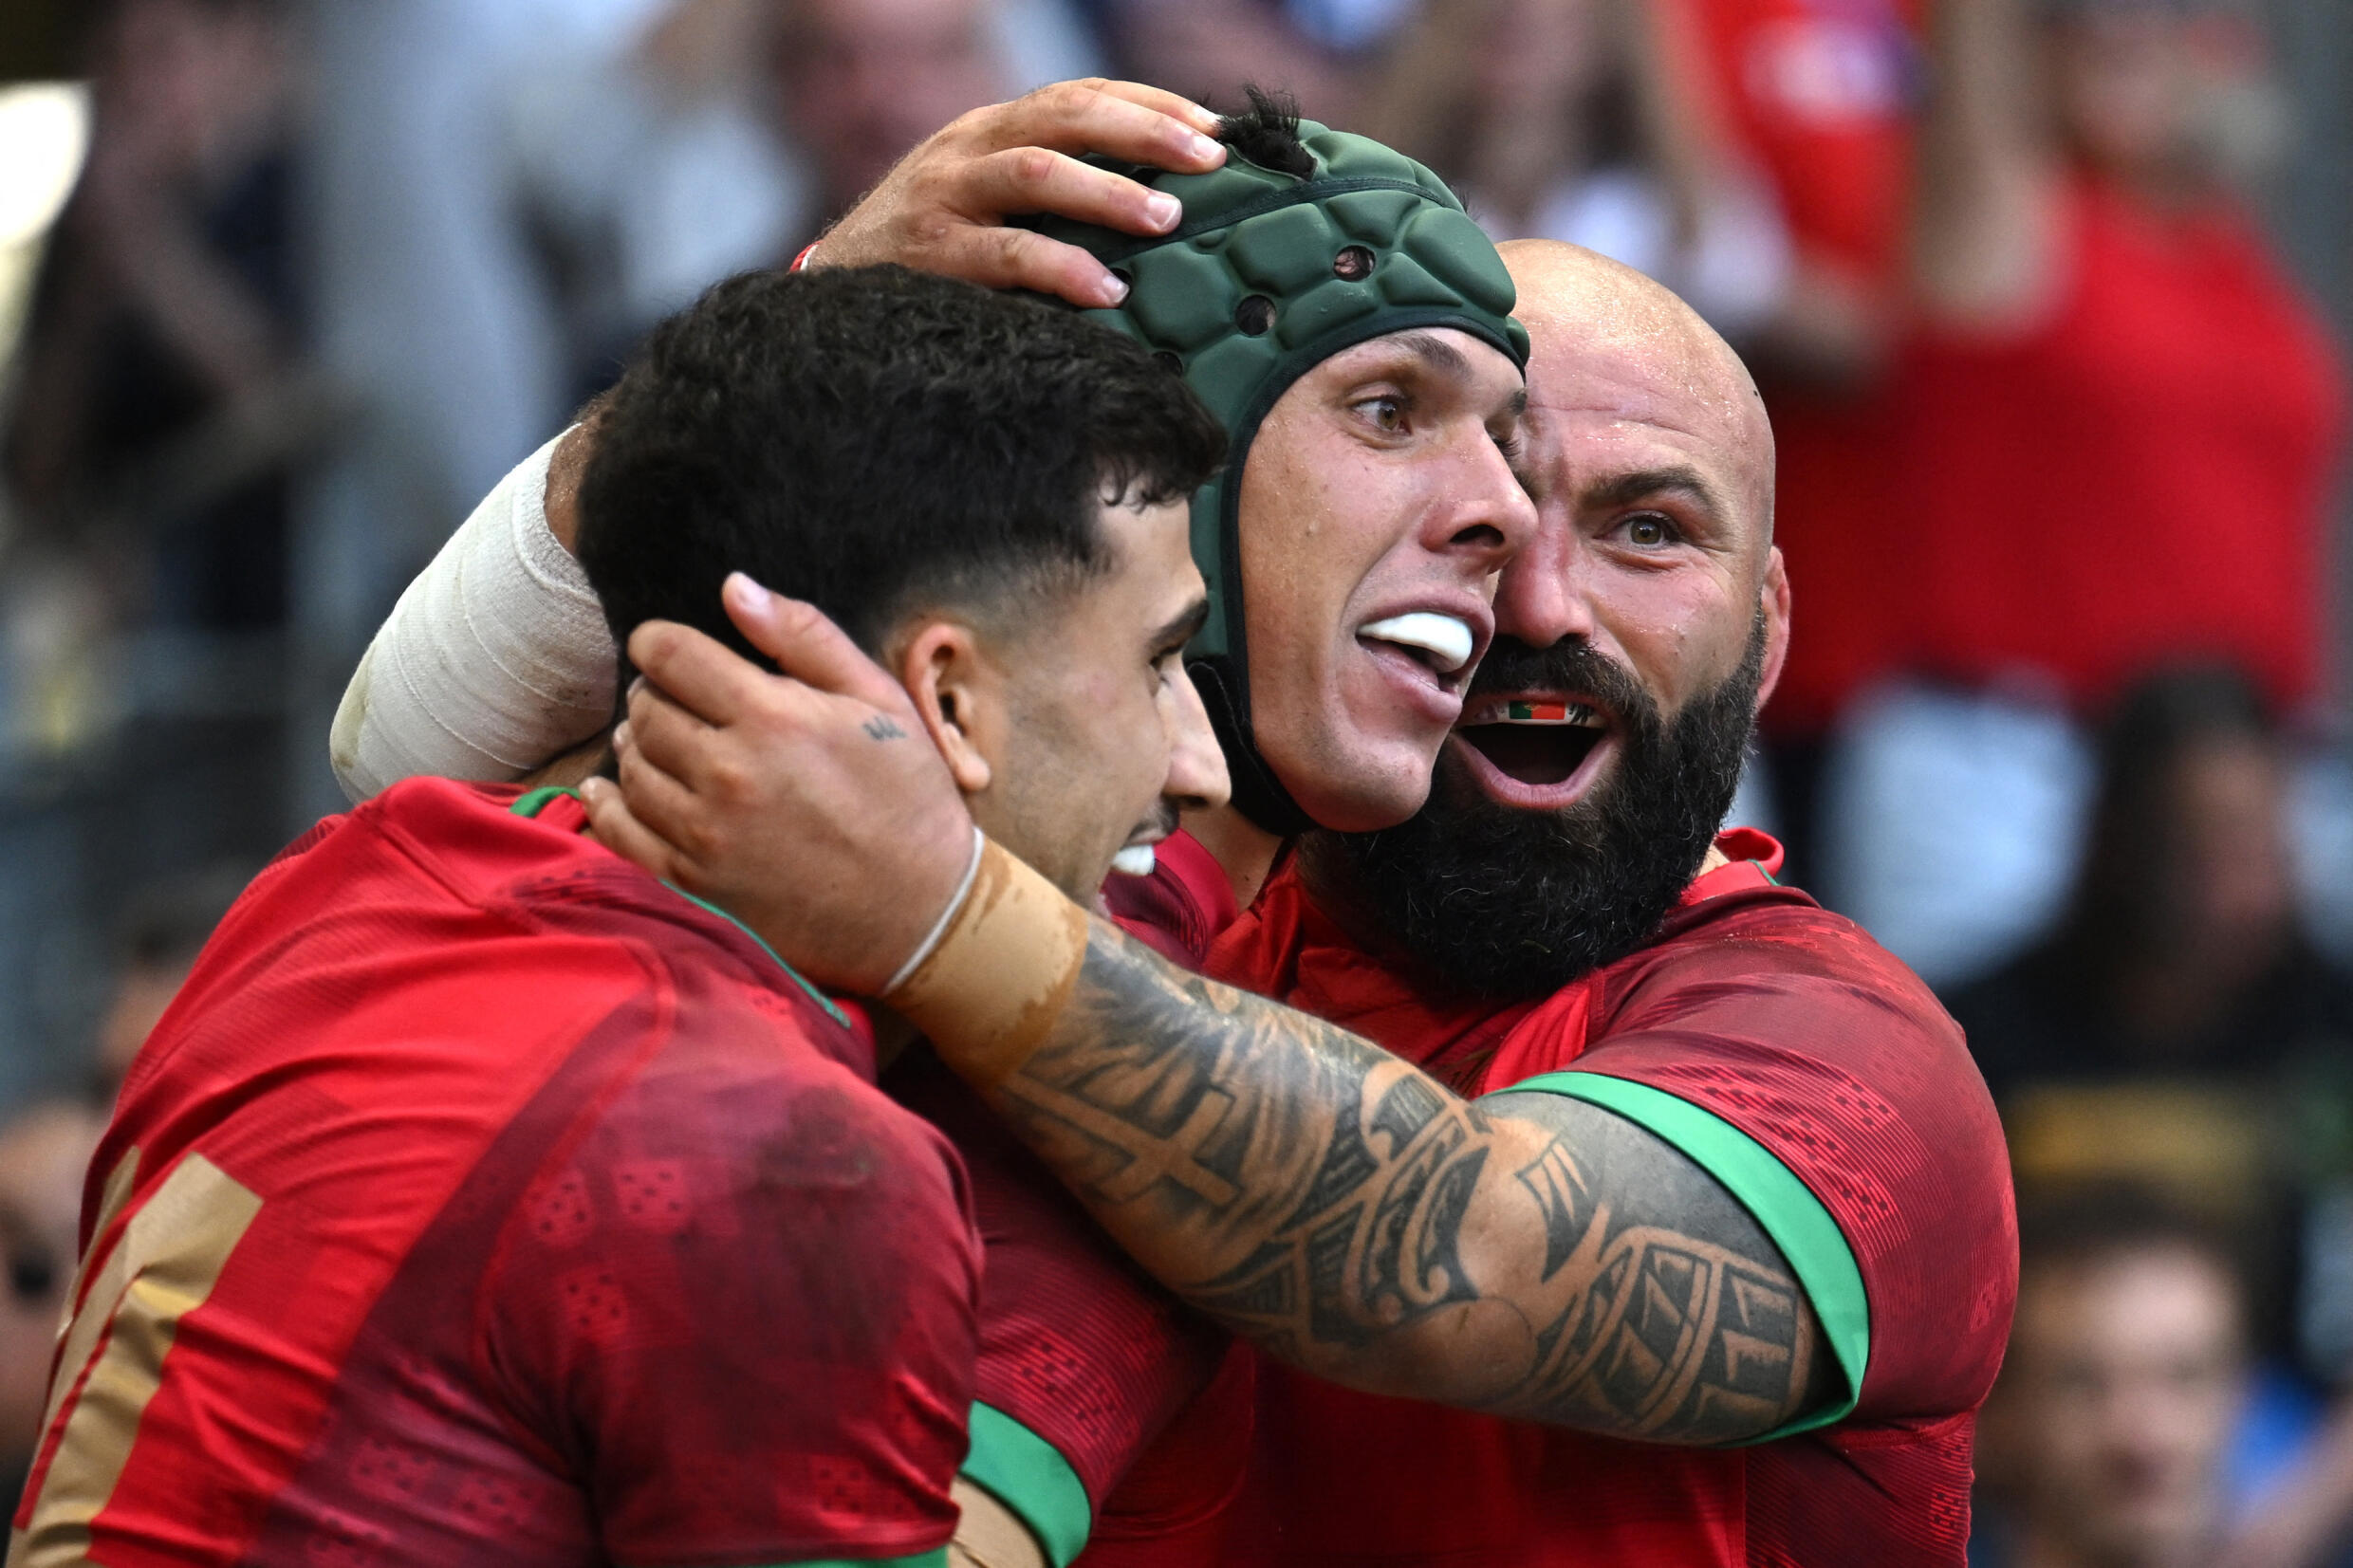 Râguebi: Portugal perdeu frente à Austrália por 34-14